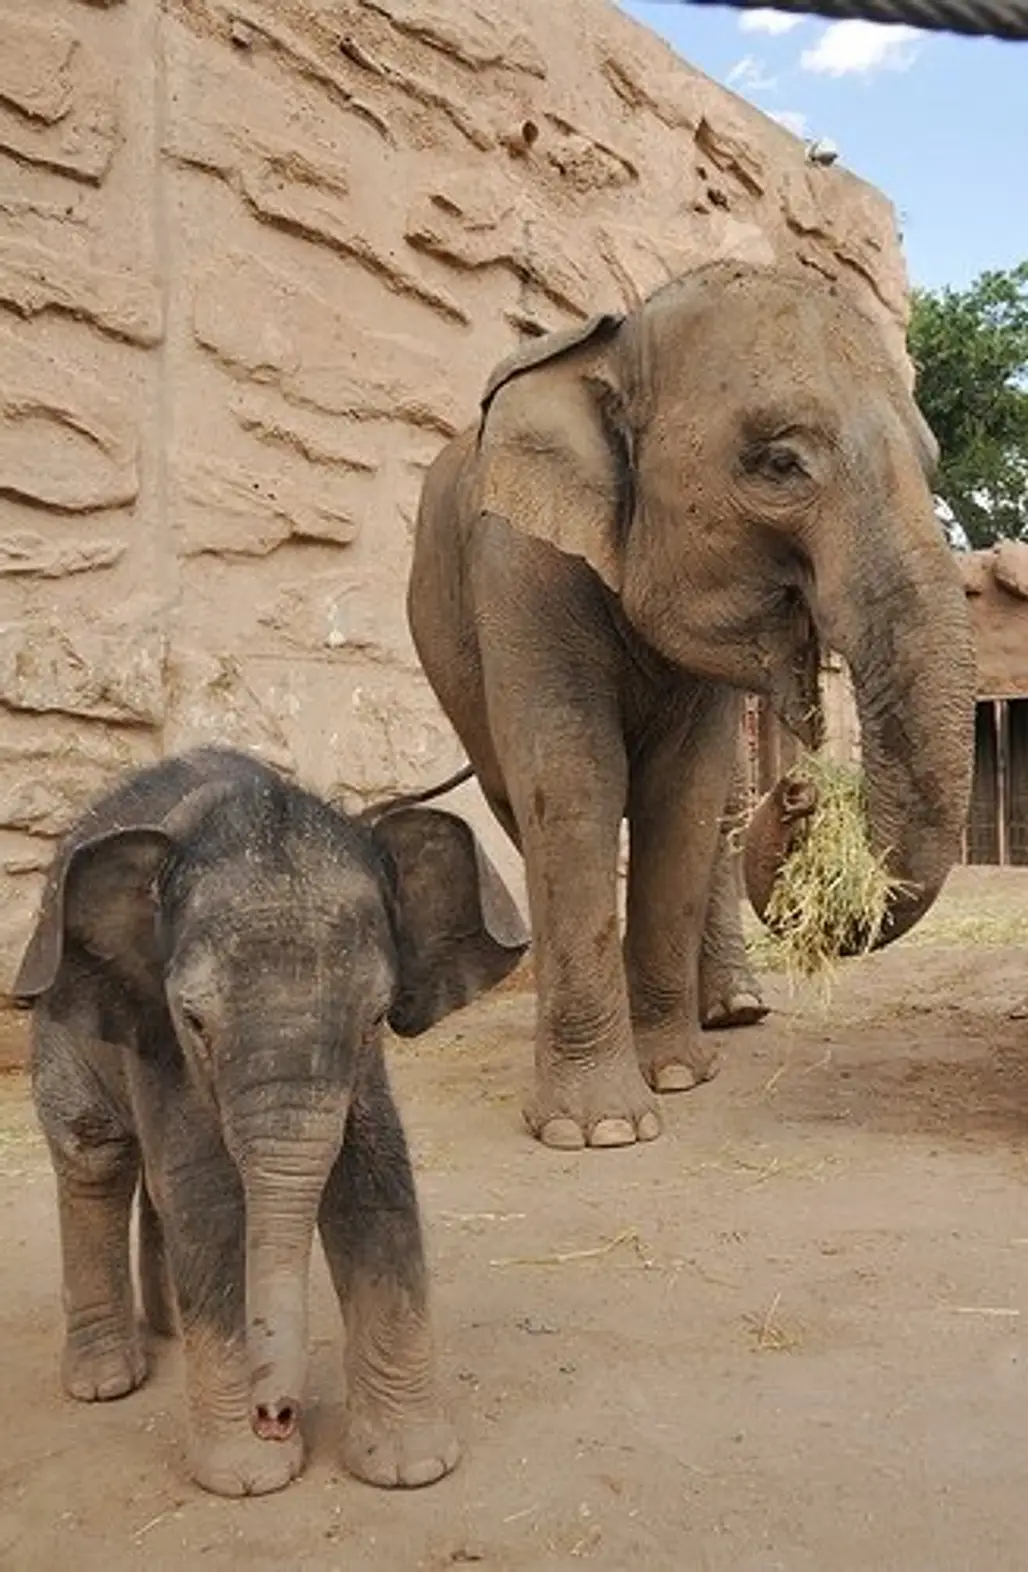 Visit an Elephant Sanctuary